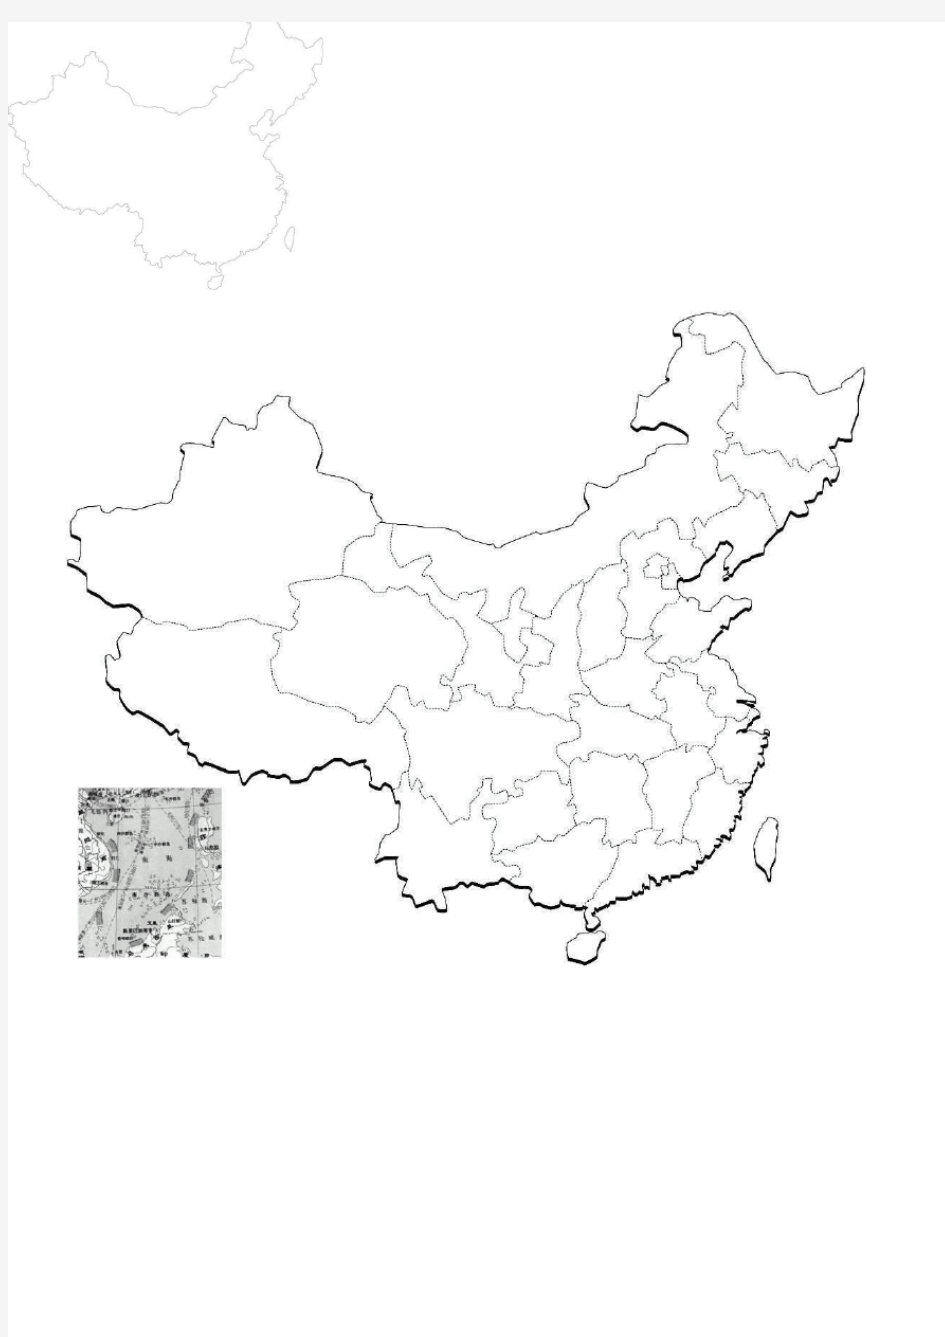 地理中国轮廓图 及各个省区图